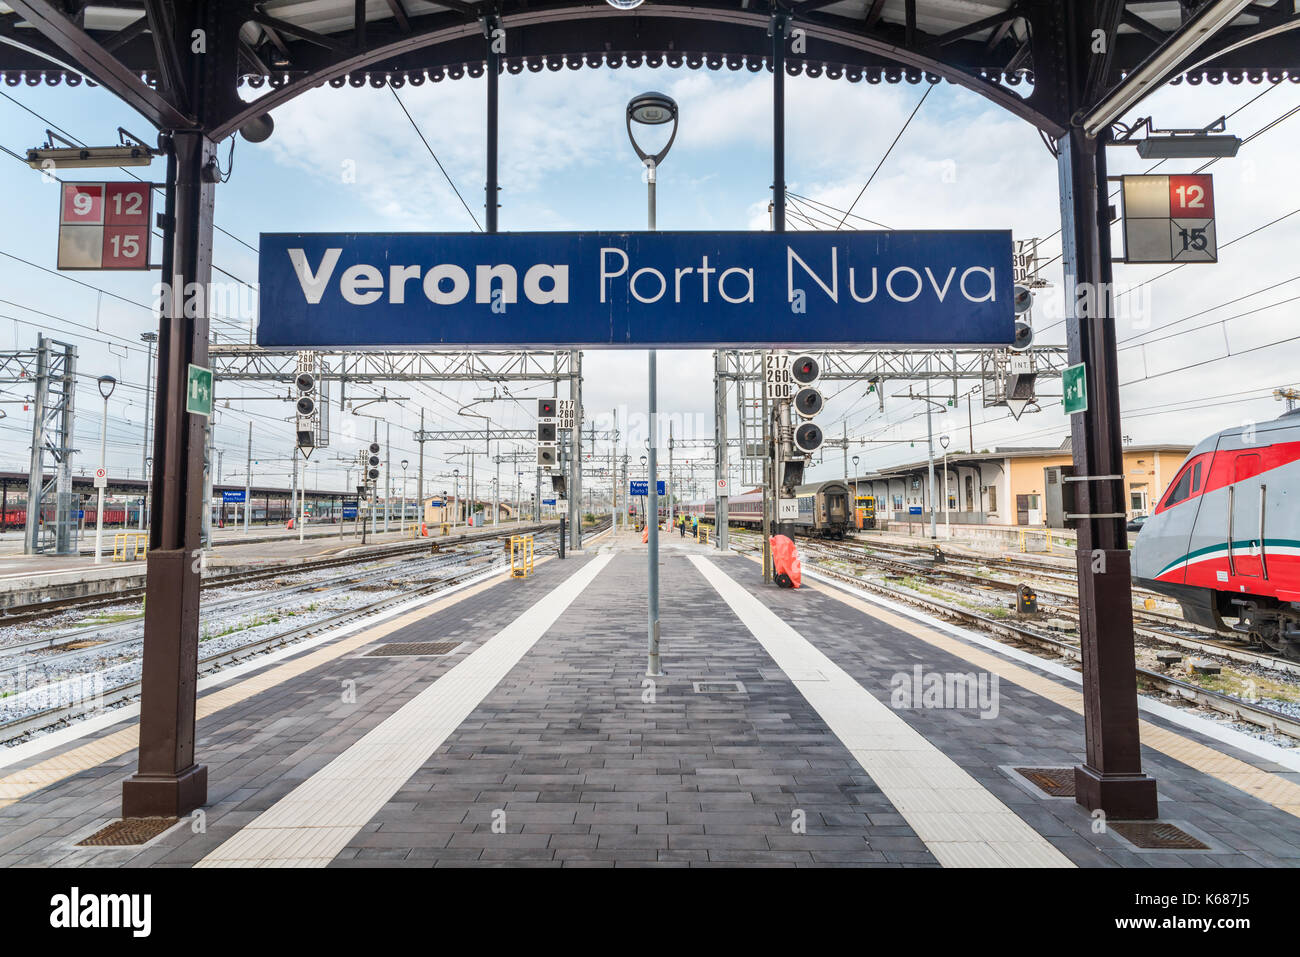 Verona Porta Nuova train station in Italy Stock Photo - Alamy